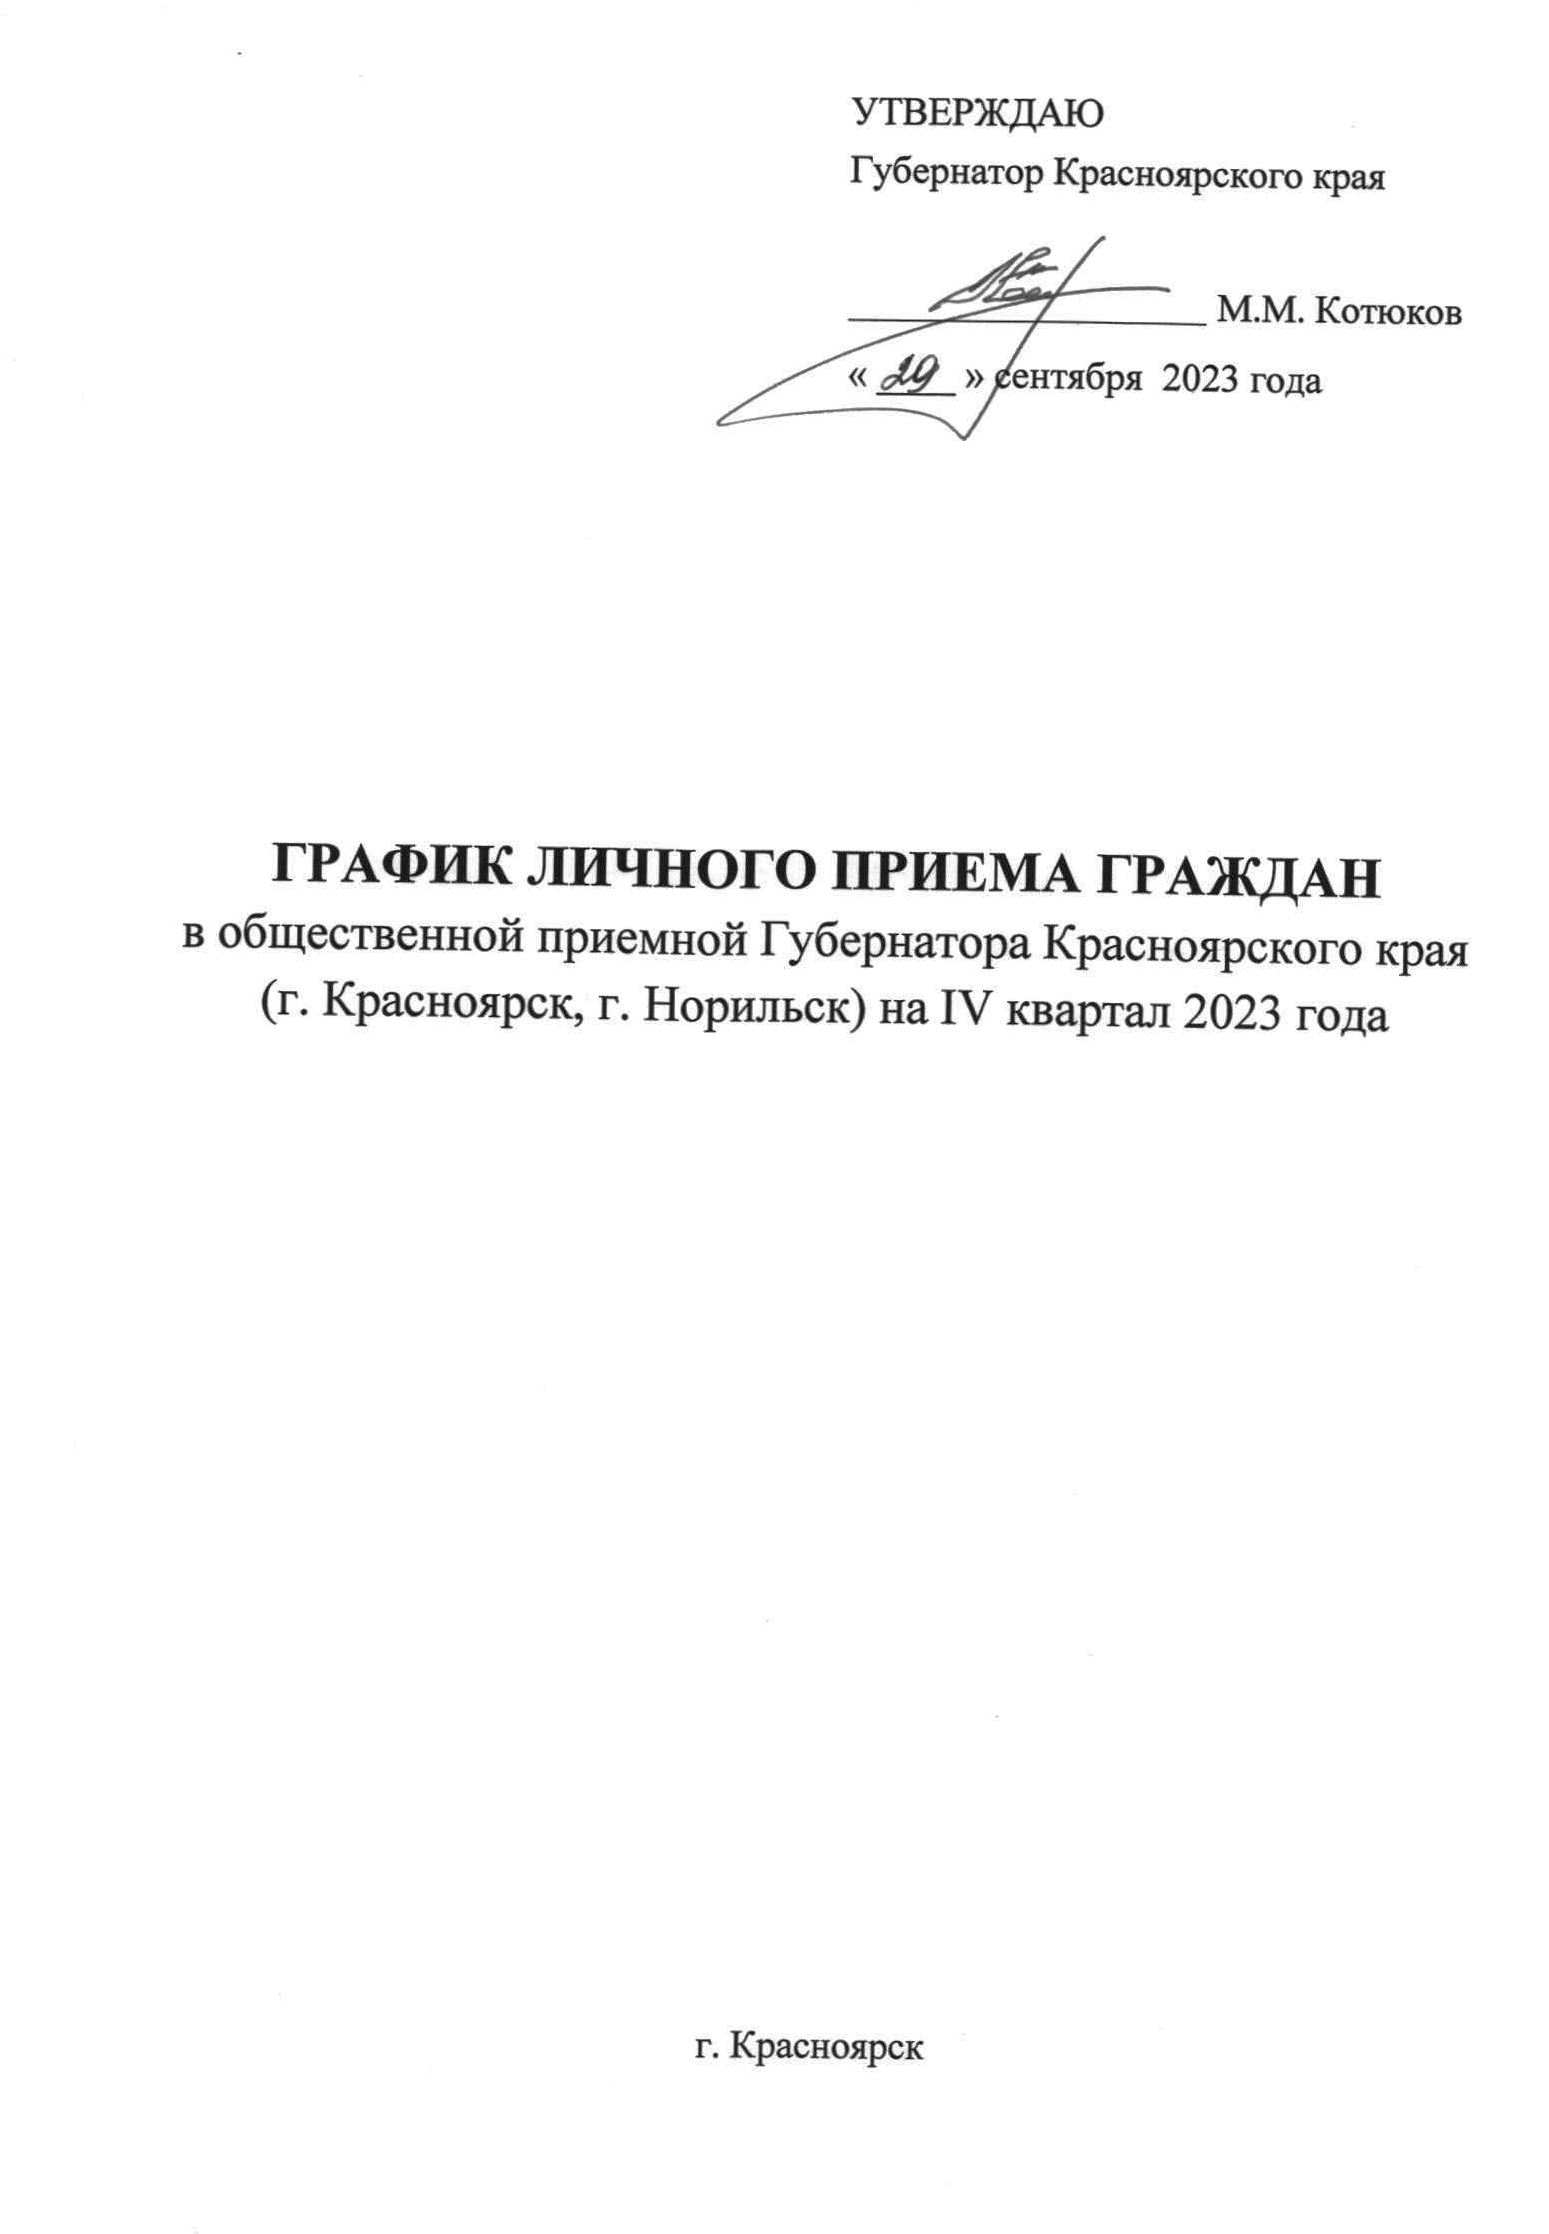 График личного приема граждан в общественной приемной Губернатора Красноярского края  в г. Красноярске на IV квартал 2023 года.